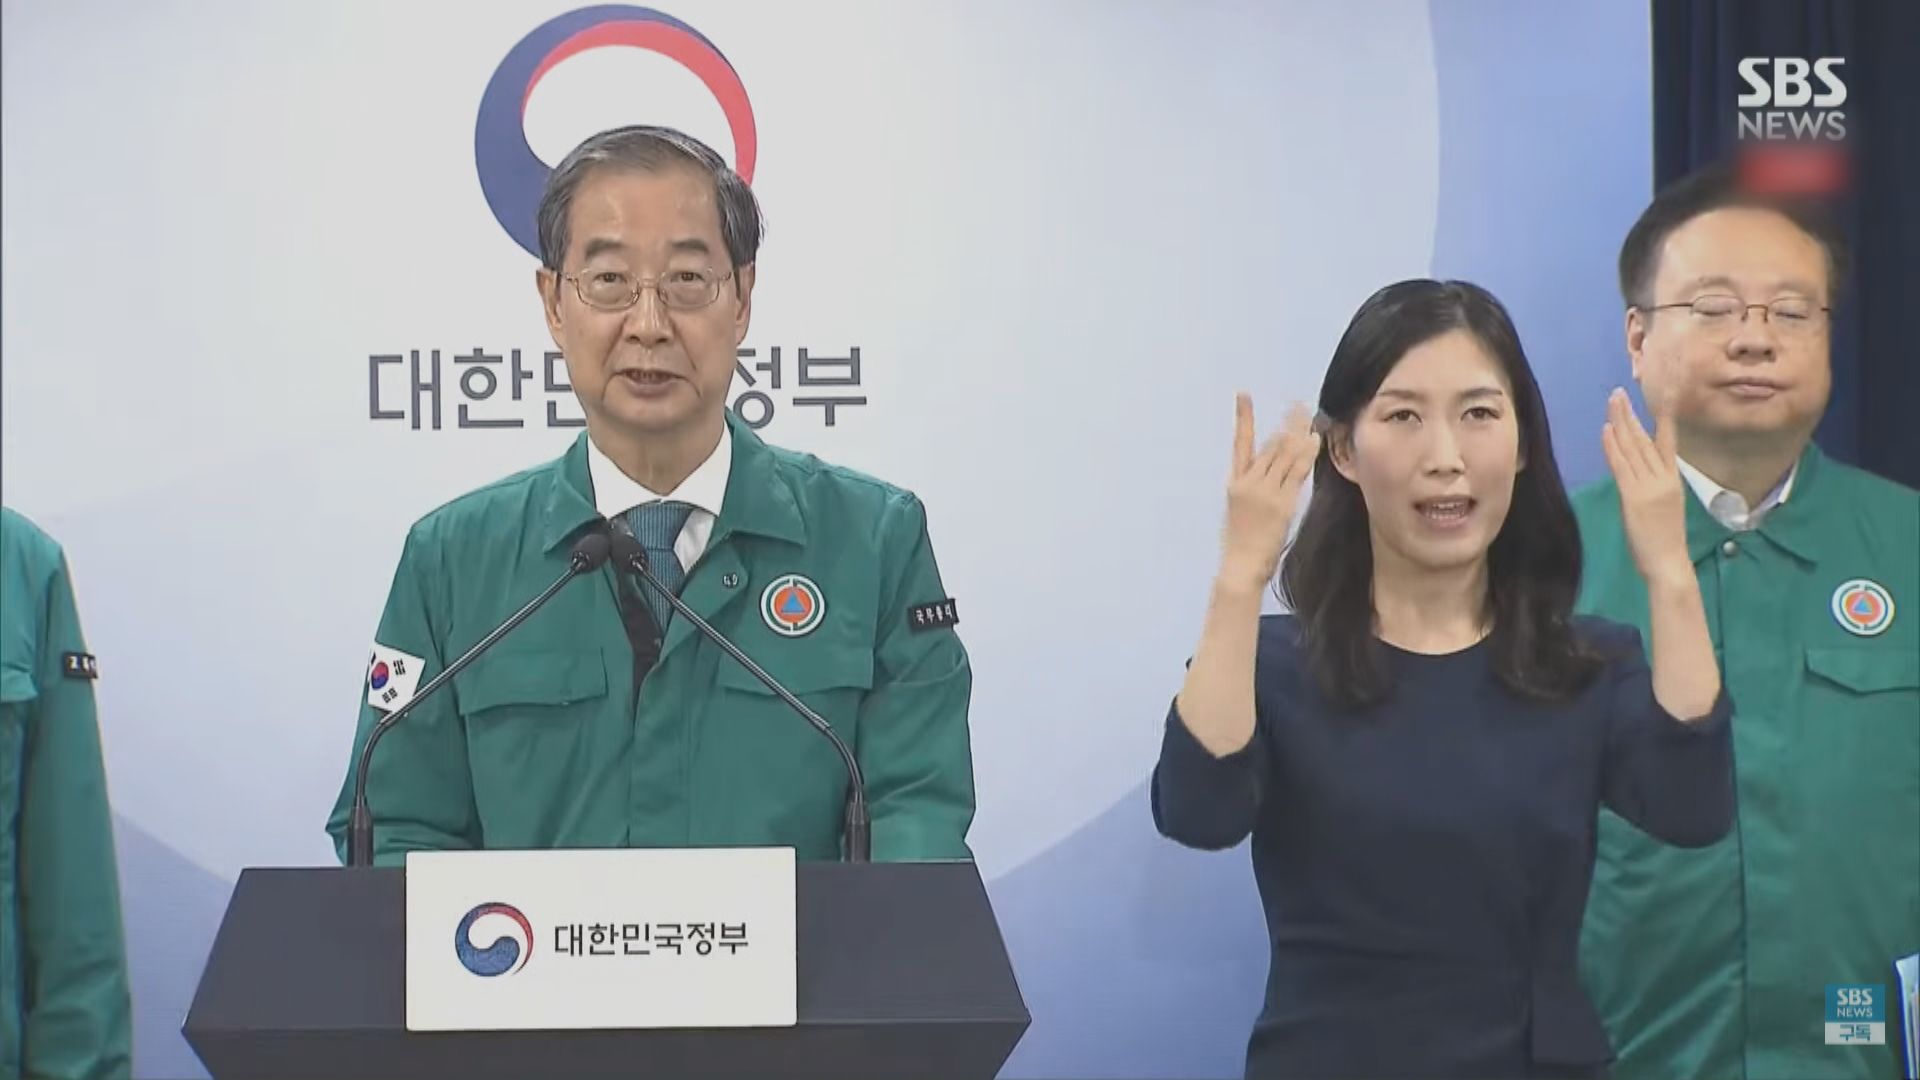 南韓政府允許醫學院在規定擴招範圍內自主招生